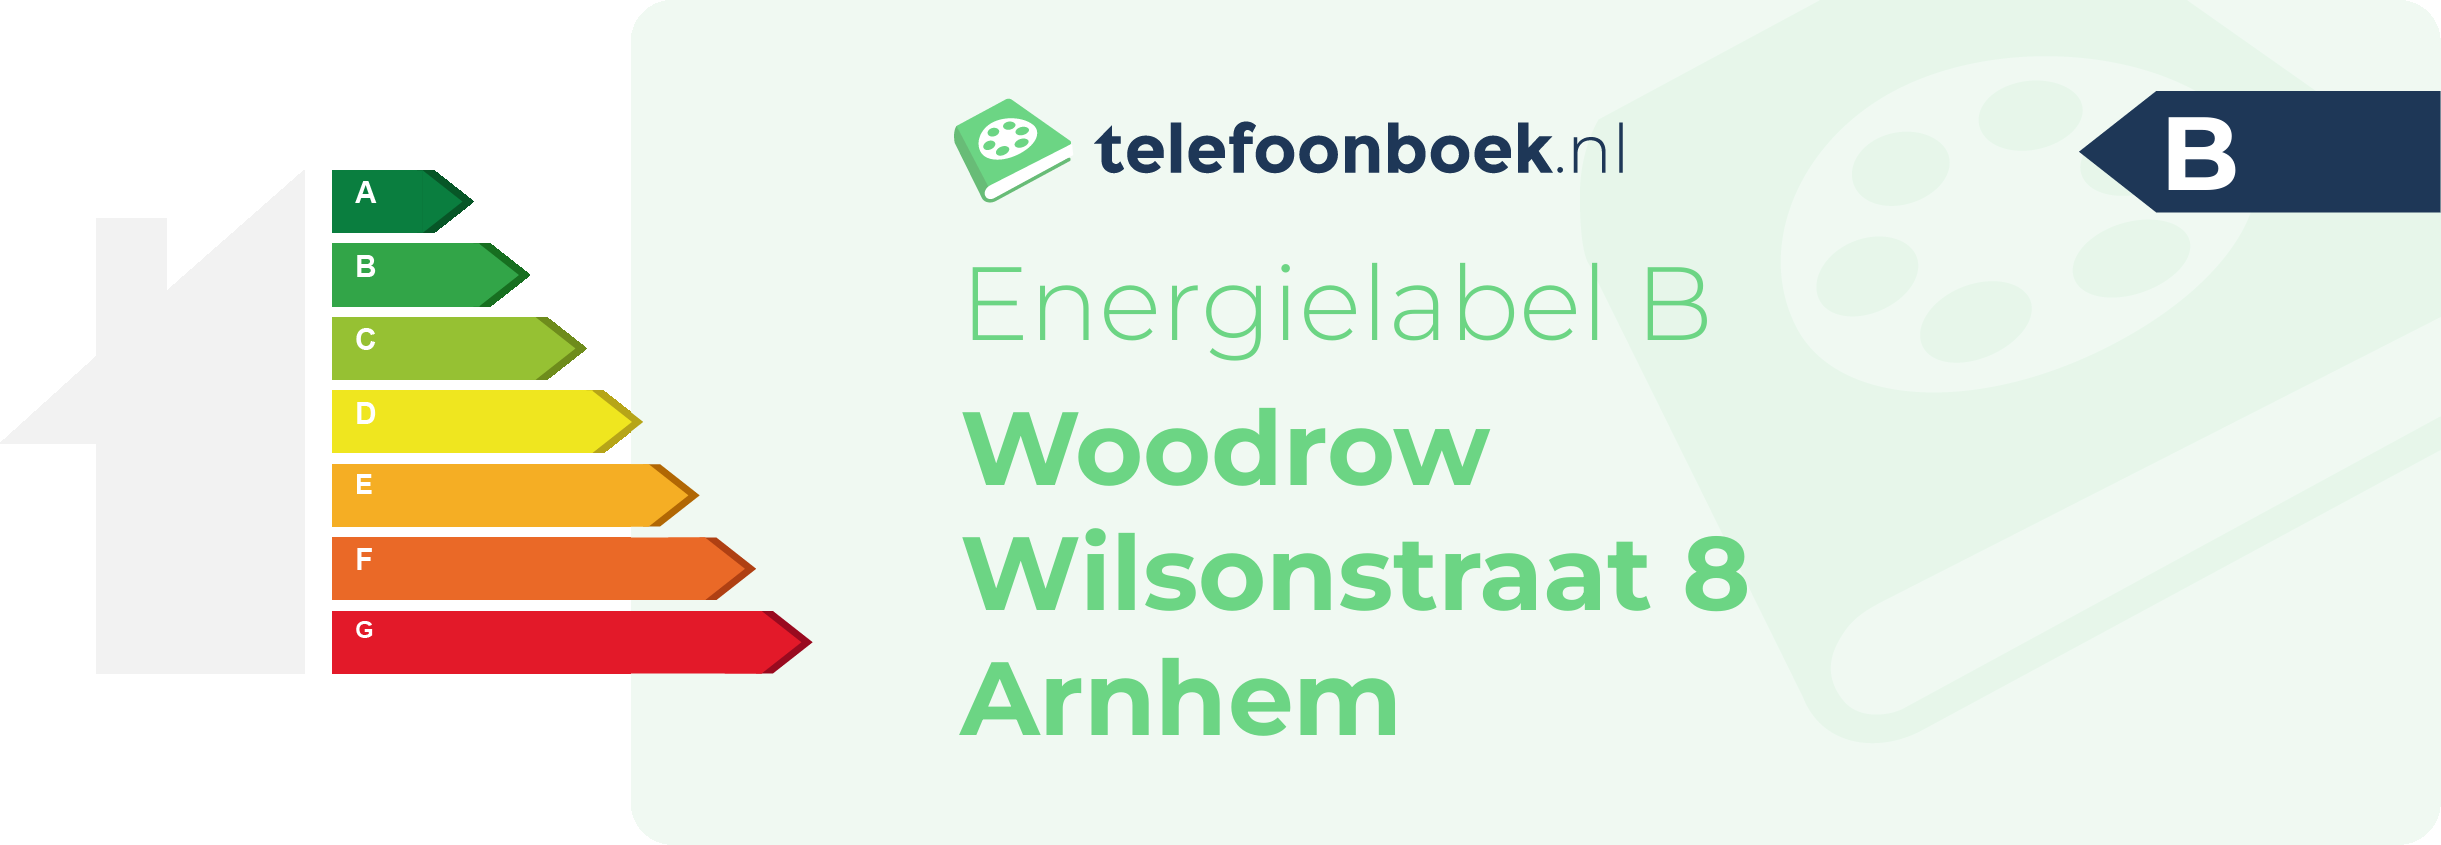 Energielabel Woodrow Wilsonstraat 8 Arnhem